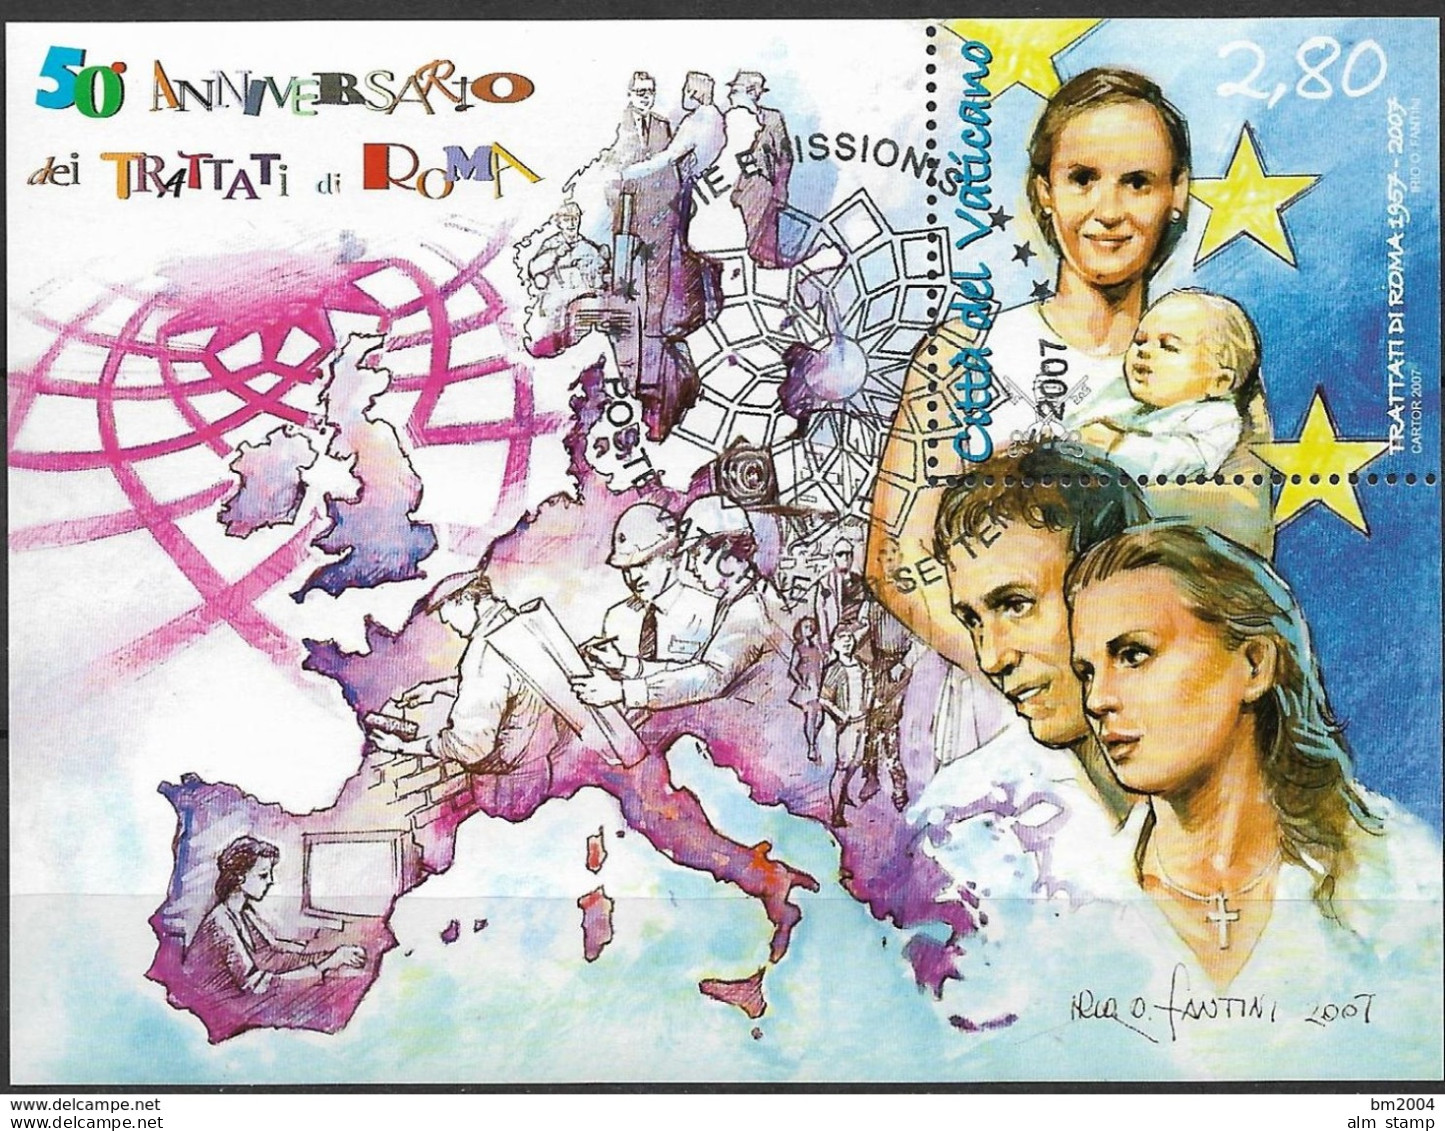 2007 Vatikan  Mi. Bl. 30 FD-used 50e Anniversario Dei   Trattati Die Roma - Oblitérés